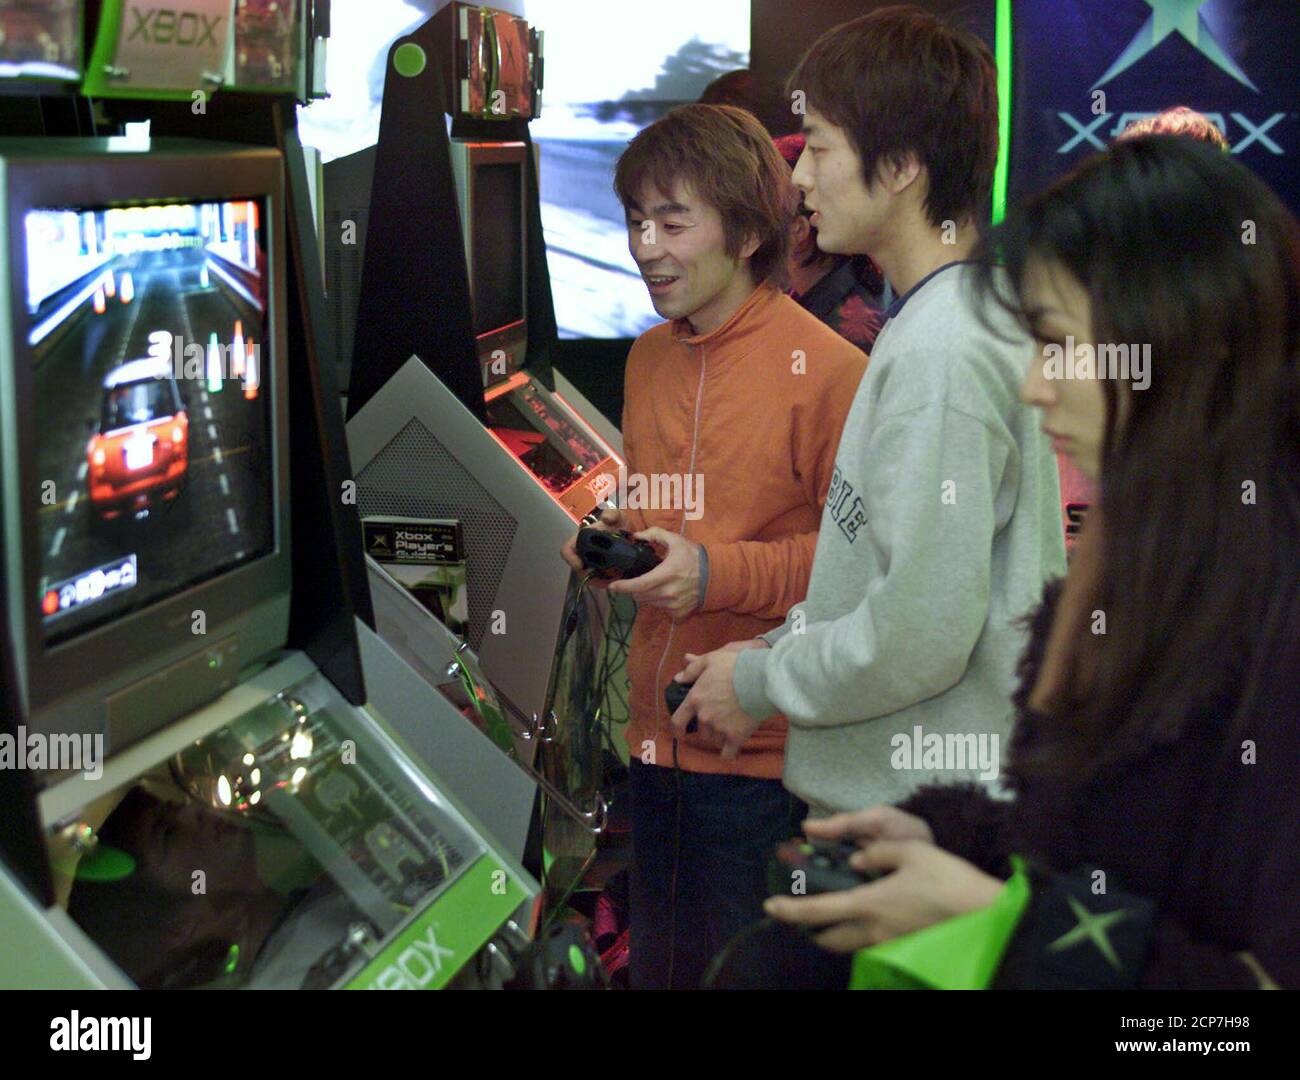 Gli appassionati di giochi giapponesi provano la console di videogiochi  Microsoft di nuova generazione Xbox durante un evento di lancio pre-vendita  "Xbox Experience" a Tokyo il 20 febbraio 2002. Le vendite di